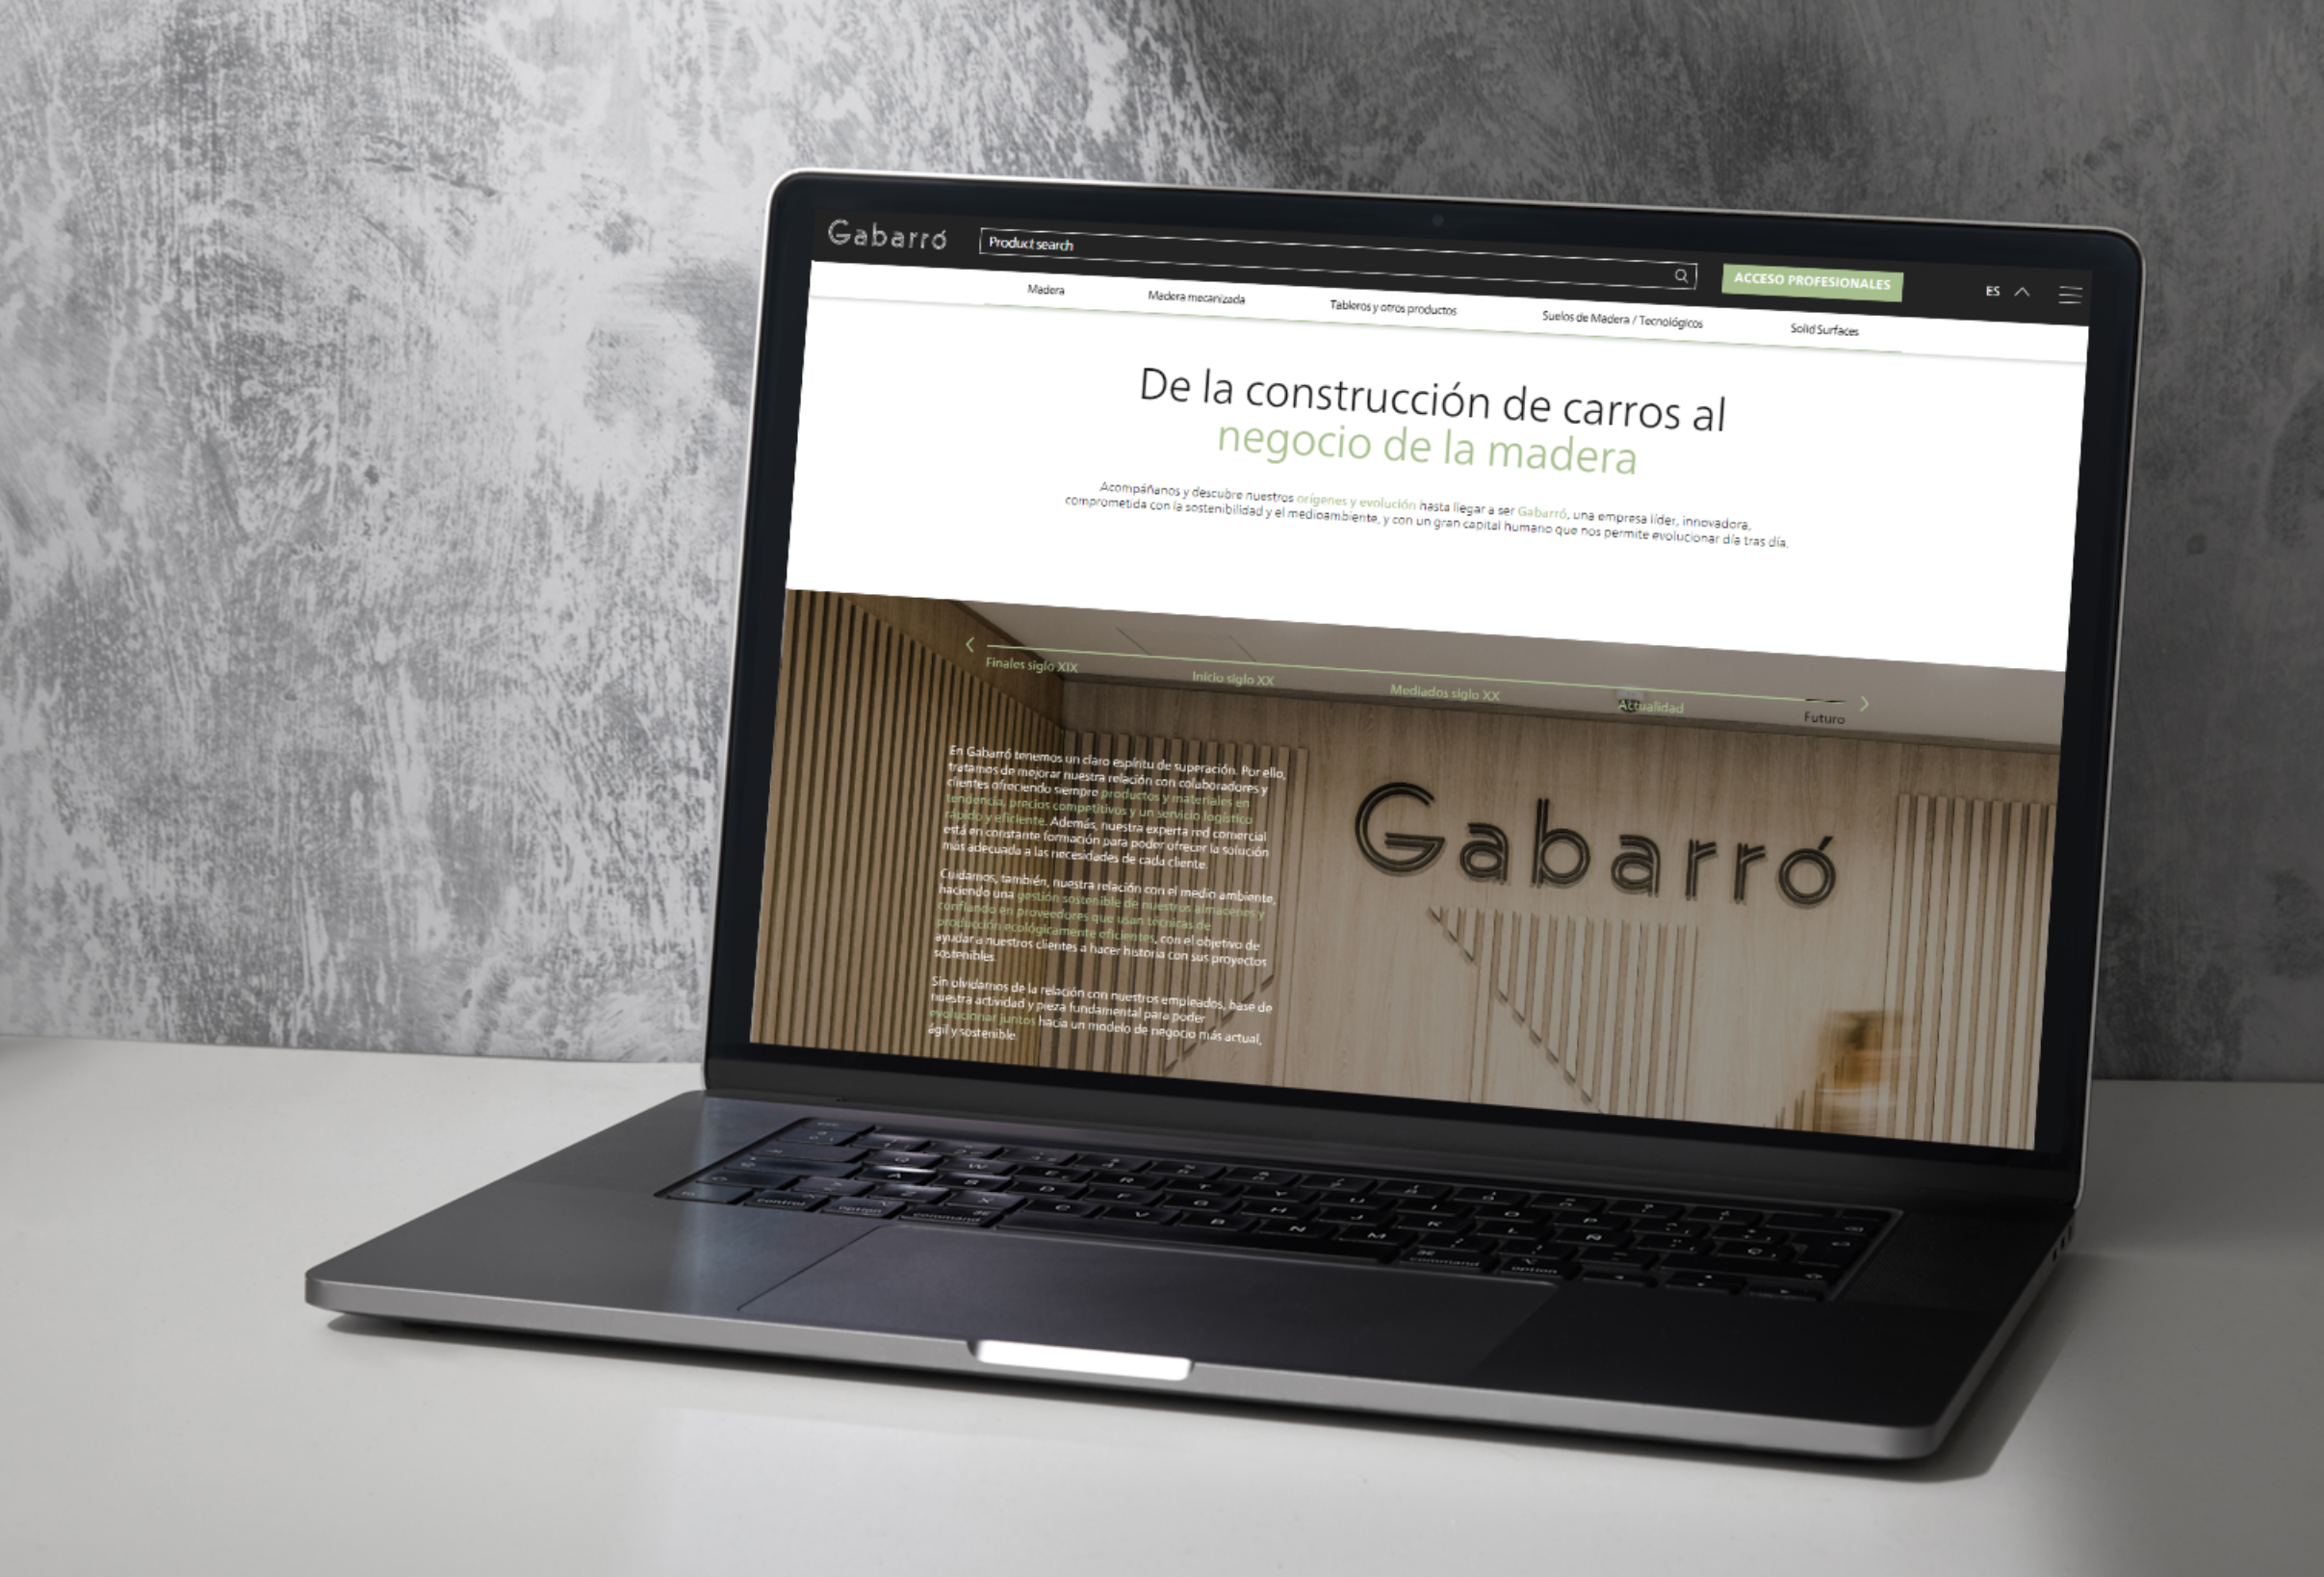 GABARRÓ renueva su página web, apostando por un diseño más moderno e intuitivo